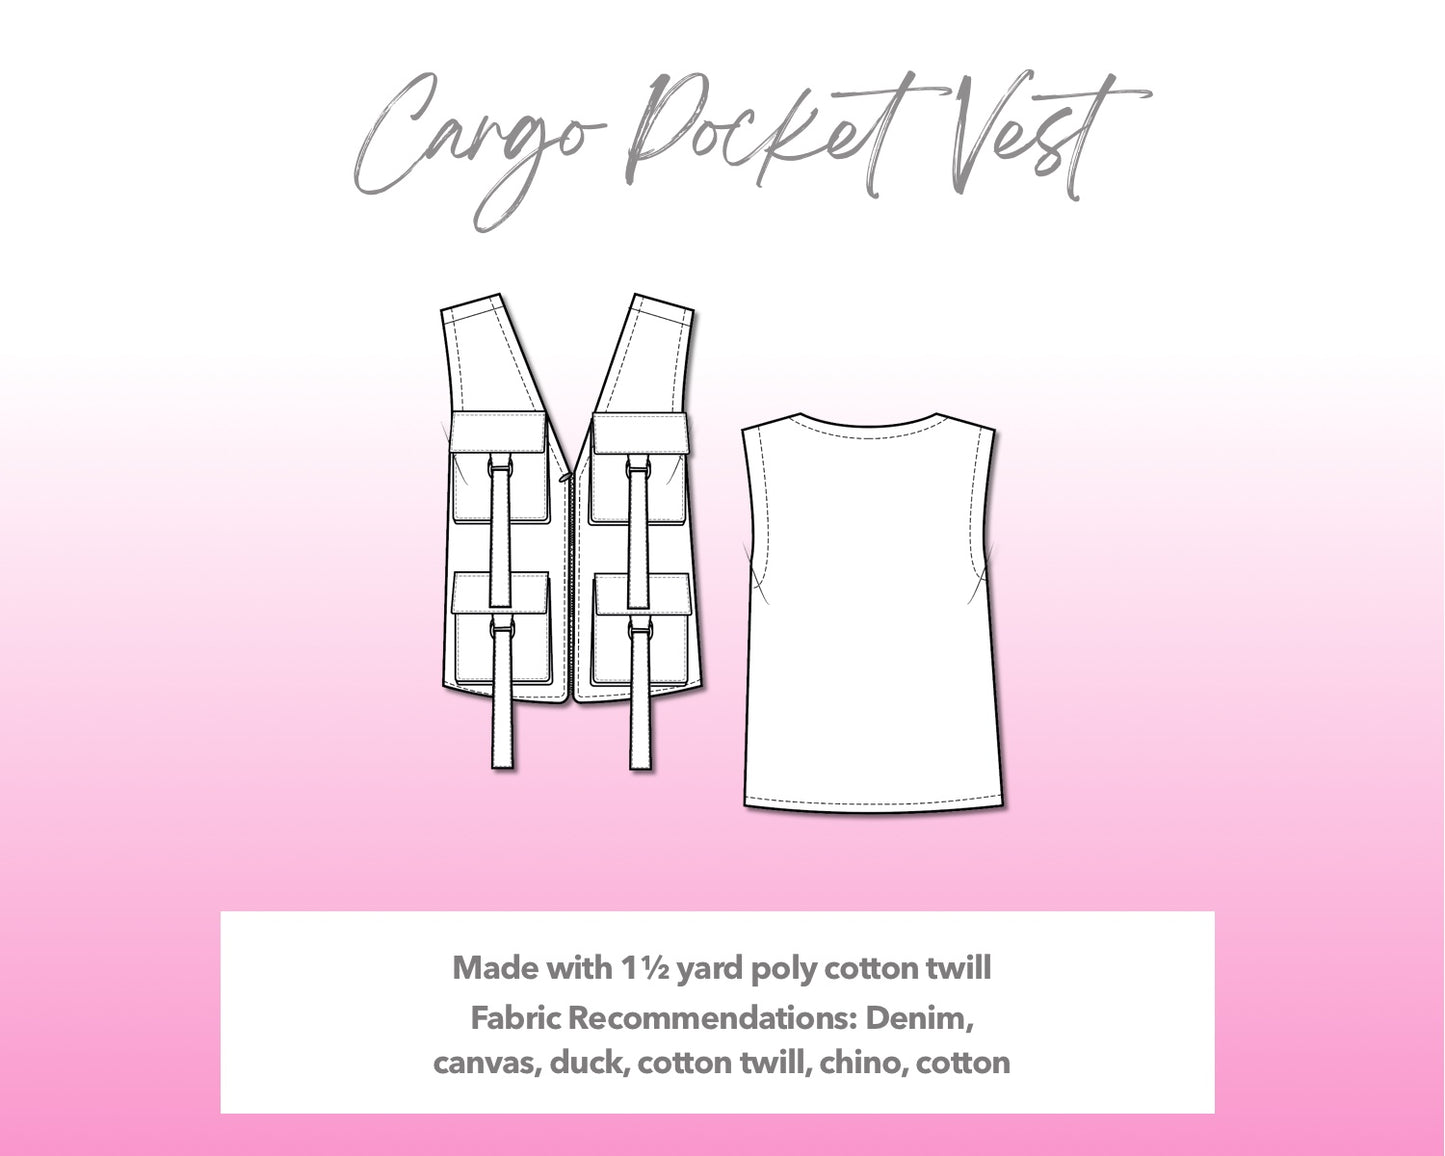 Illustration and detailed description for Cargo Pocket Vest sewing pattern.